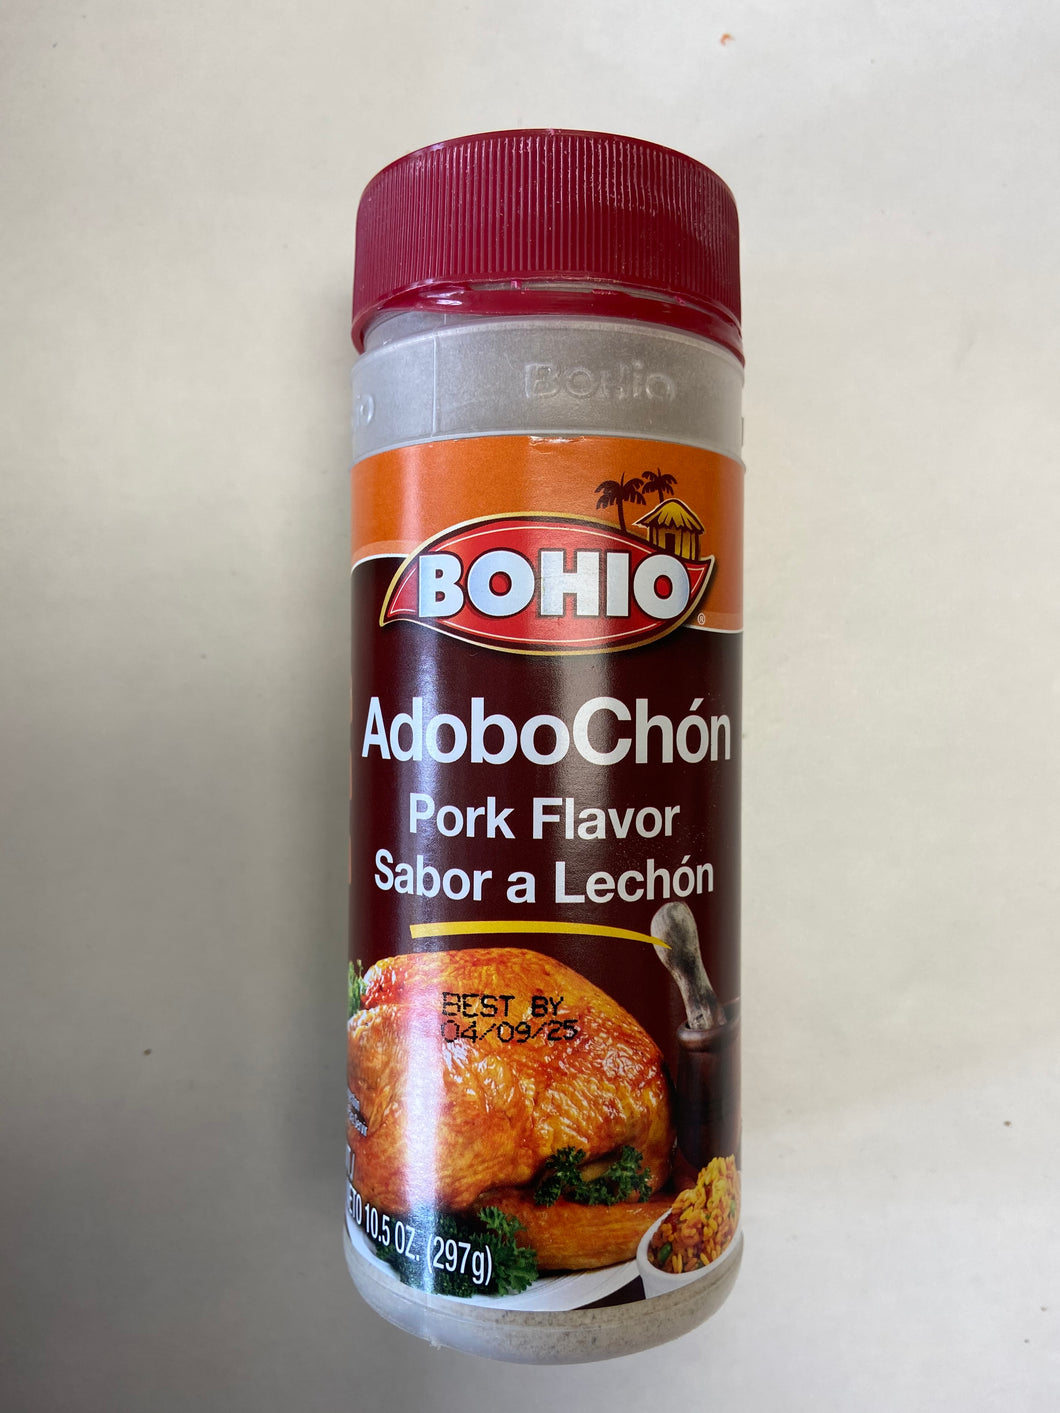 AdoboChon, Pork Flavor, Bohio